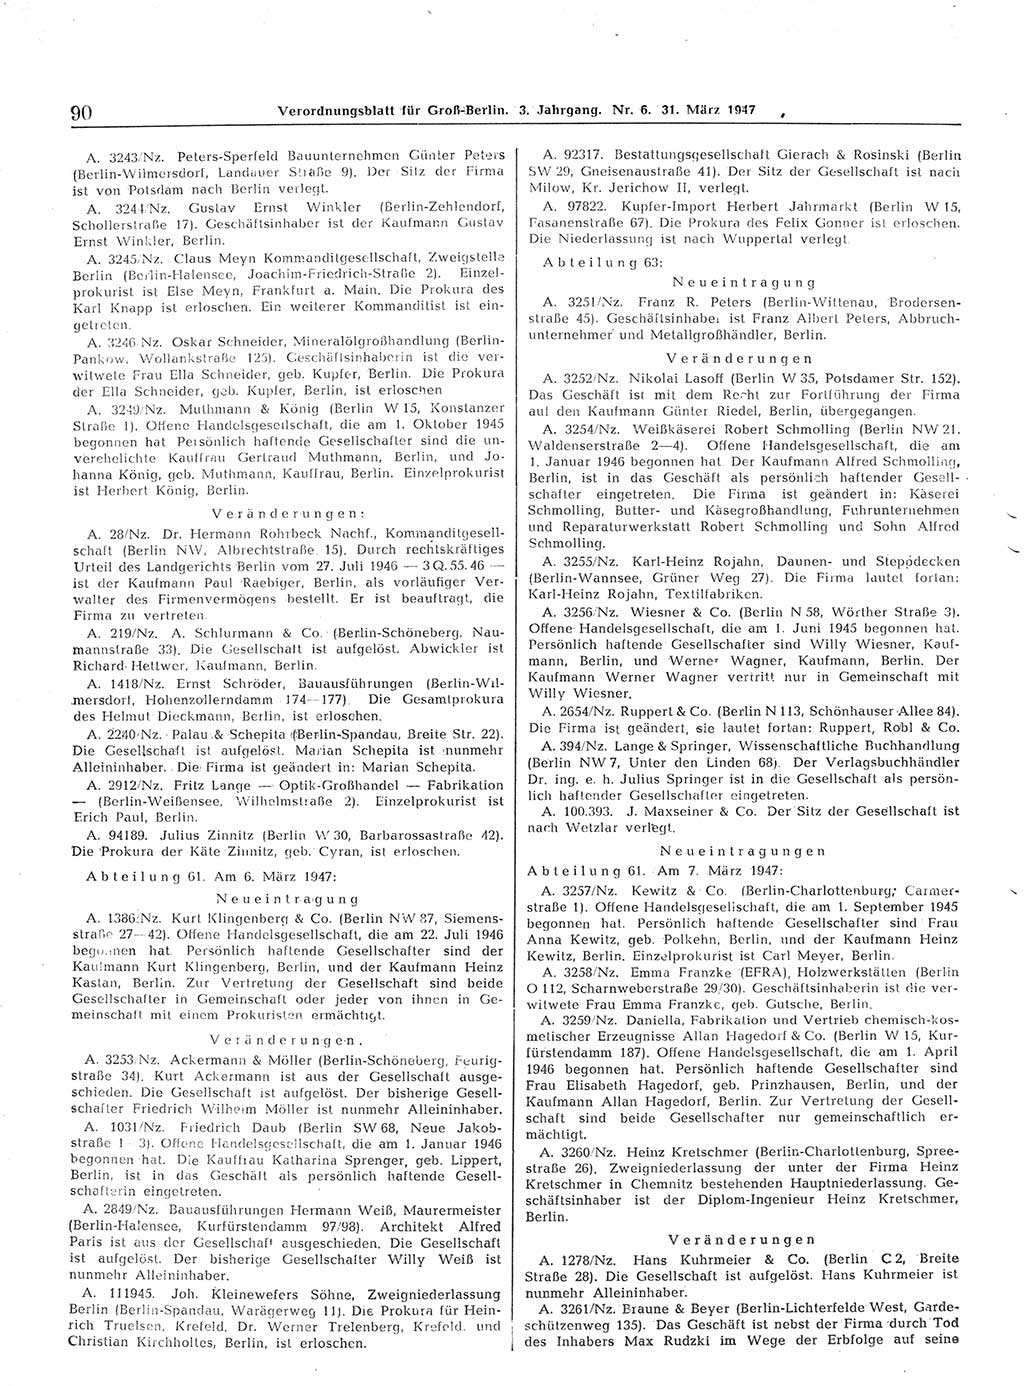 Verordnungsblatt (VOBl.) für Groß-Berlin 1947, Seite 90 (VOBl. Bln. 1947, S. 90)